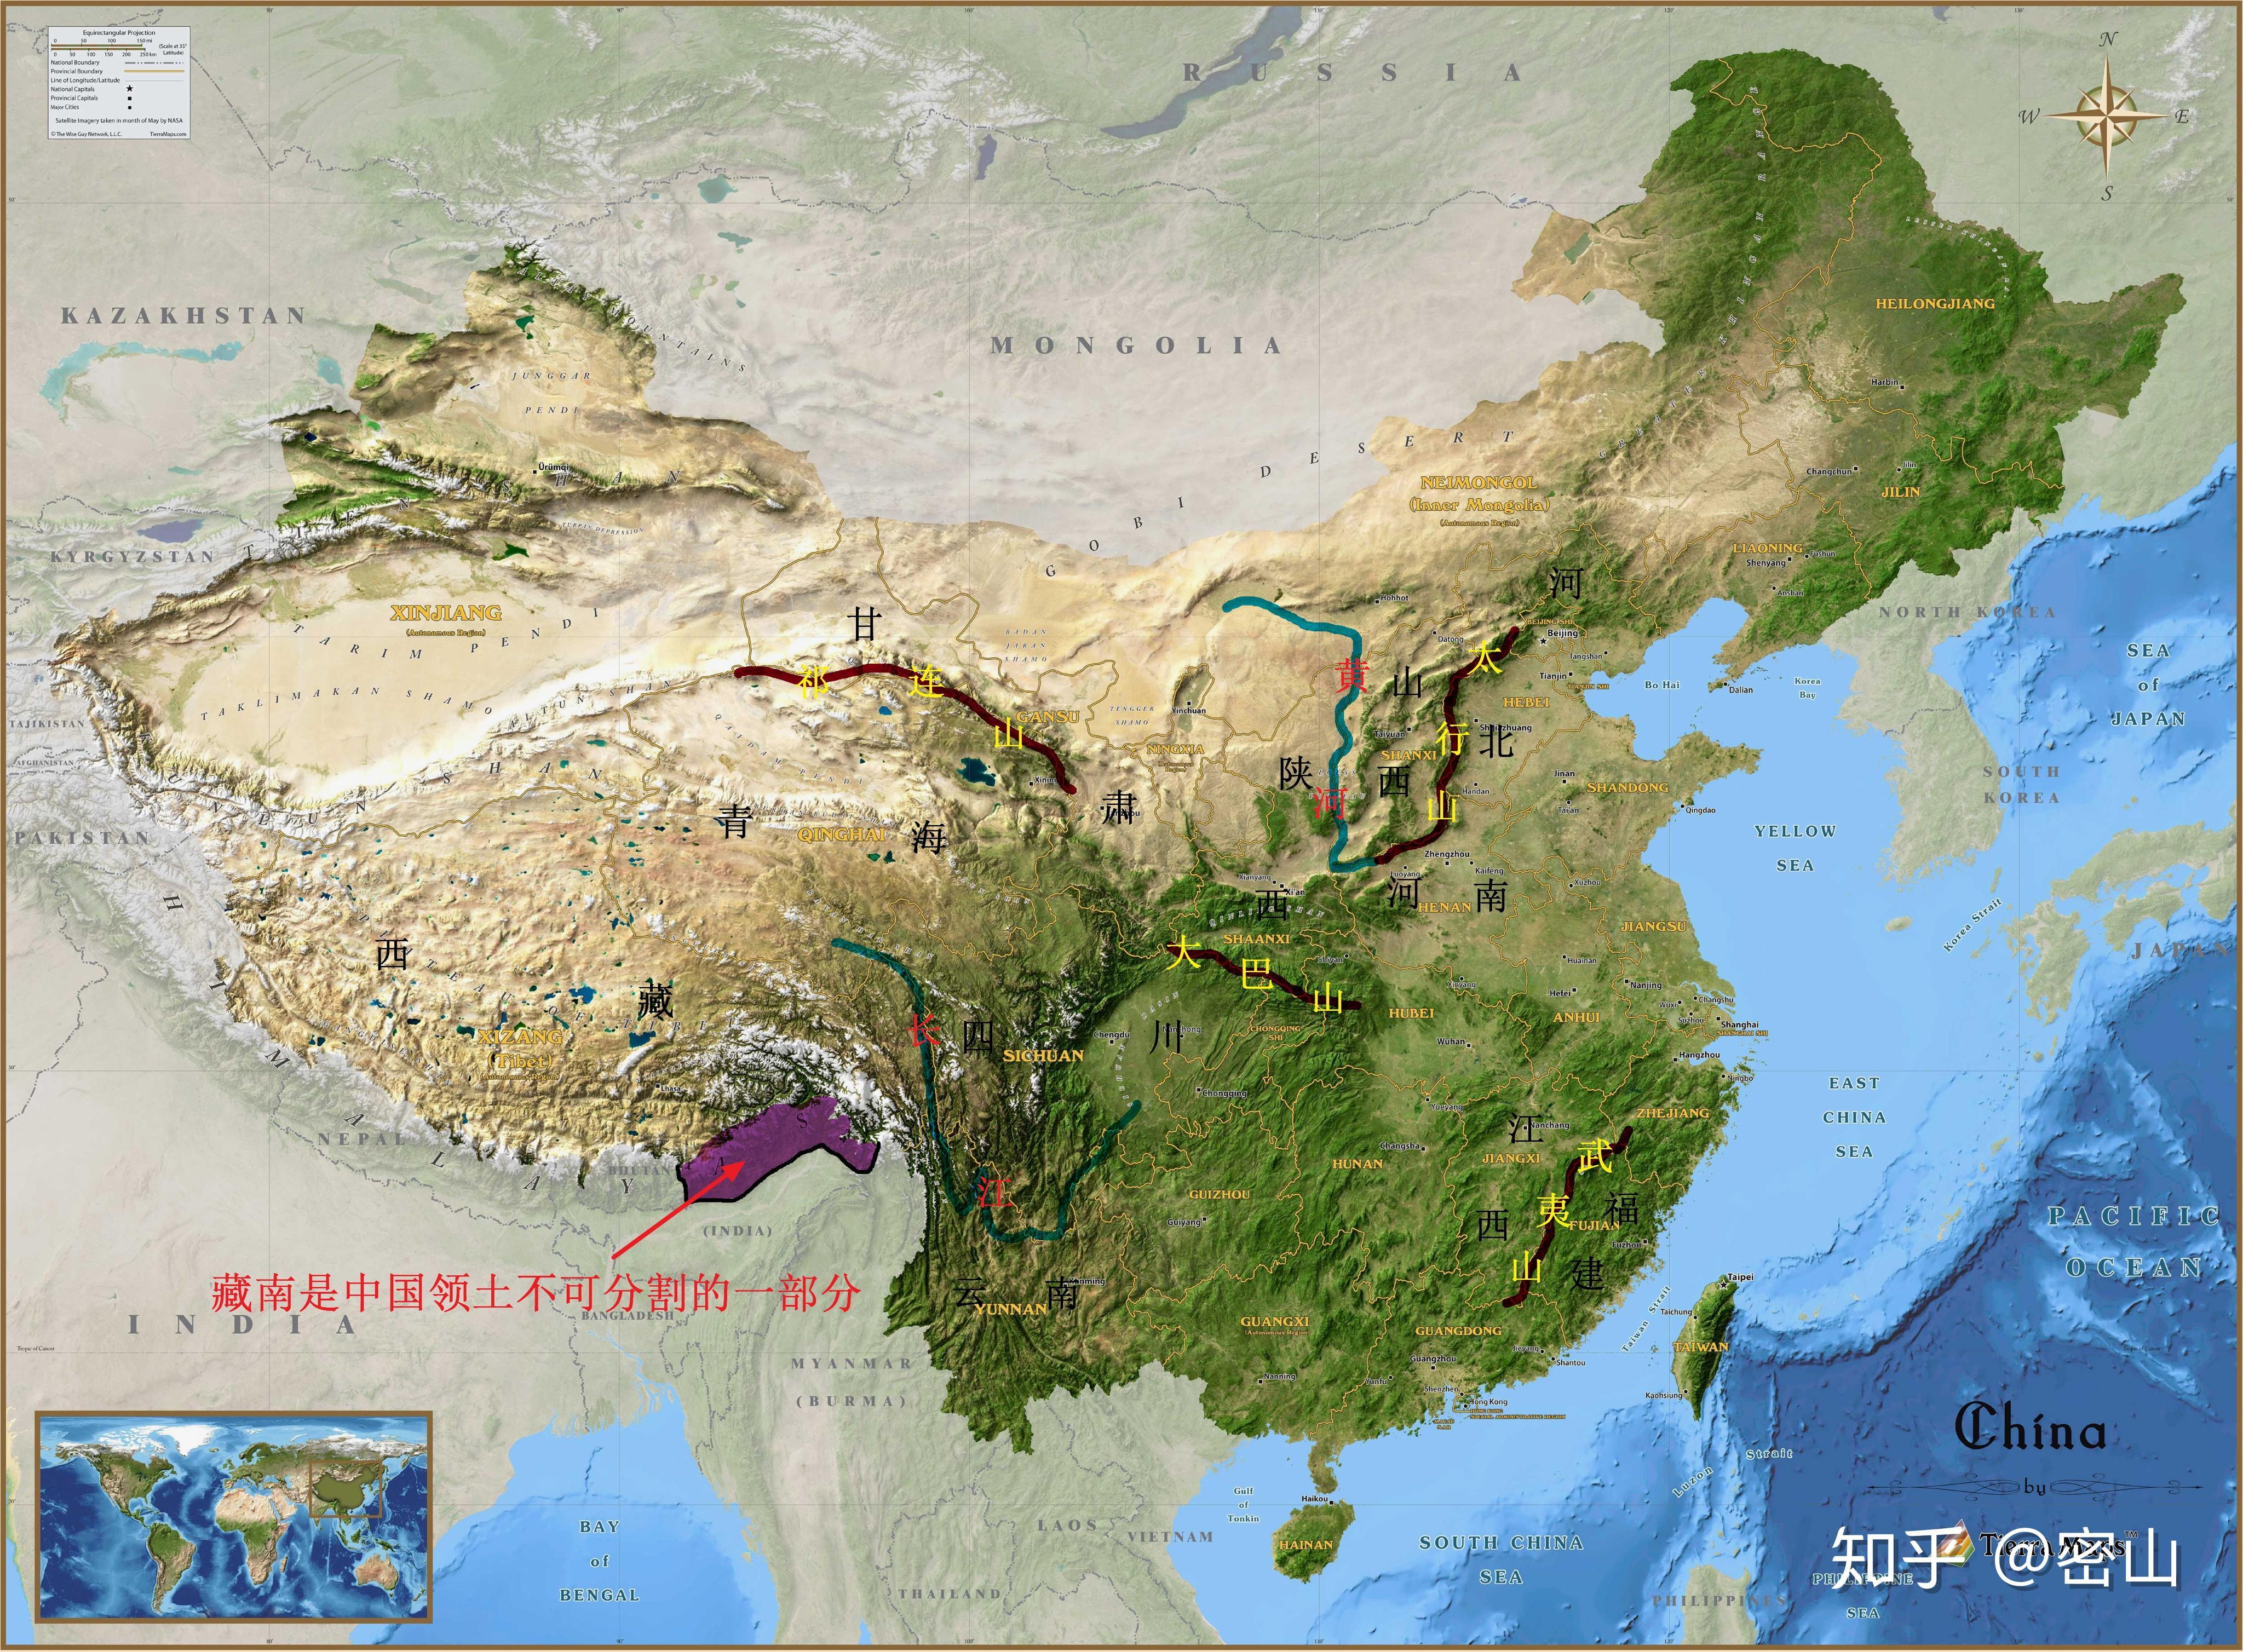 黄河流域图清晰大图（长江流域地图高清版） - 尚淘福